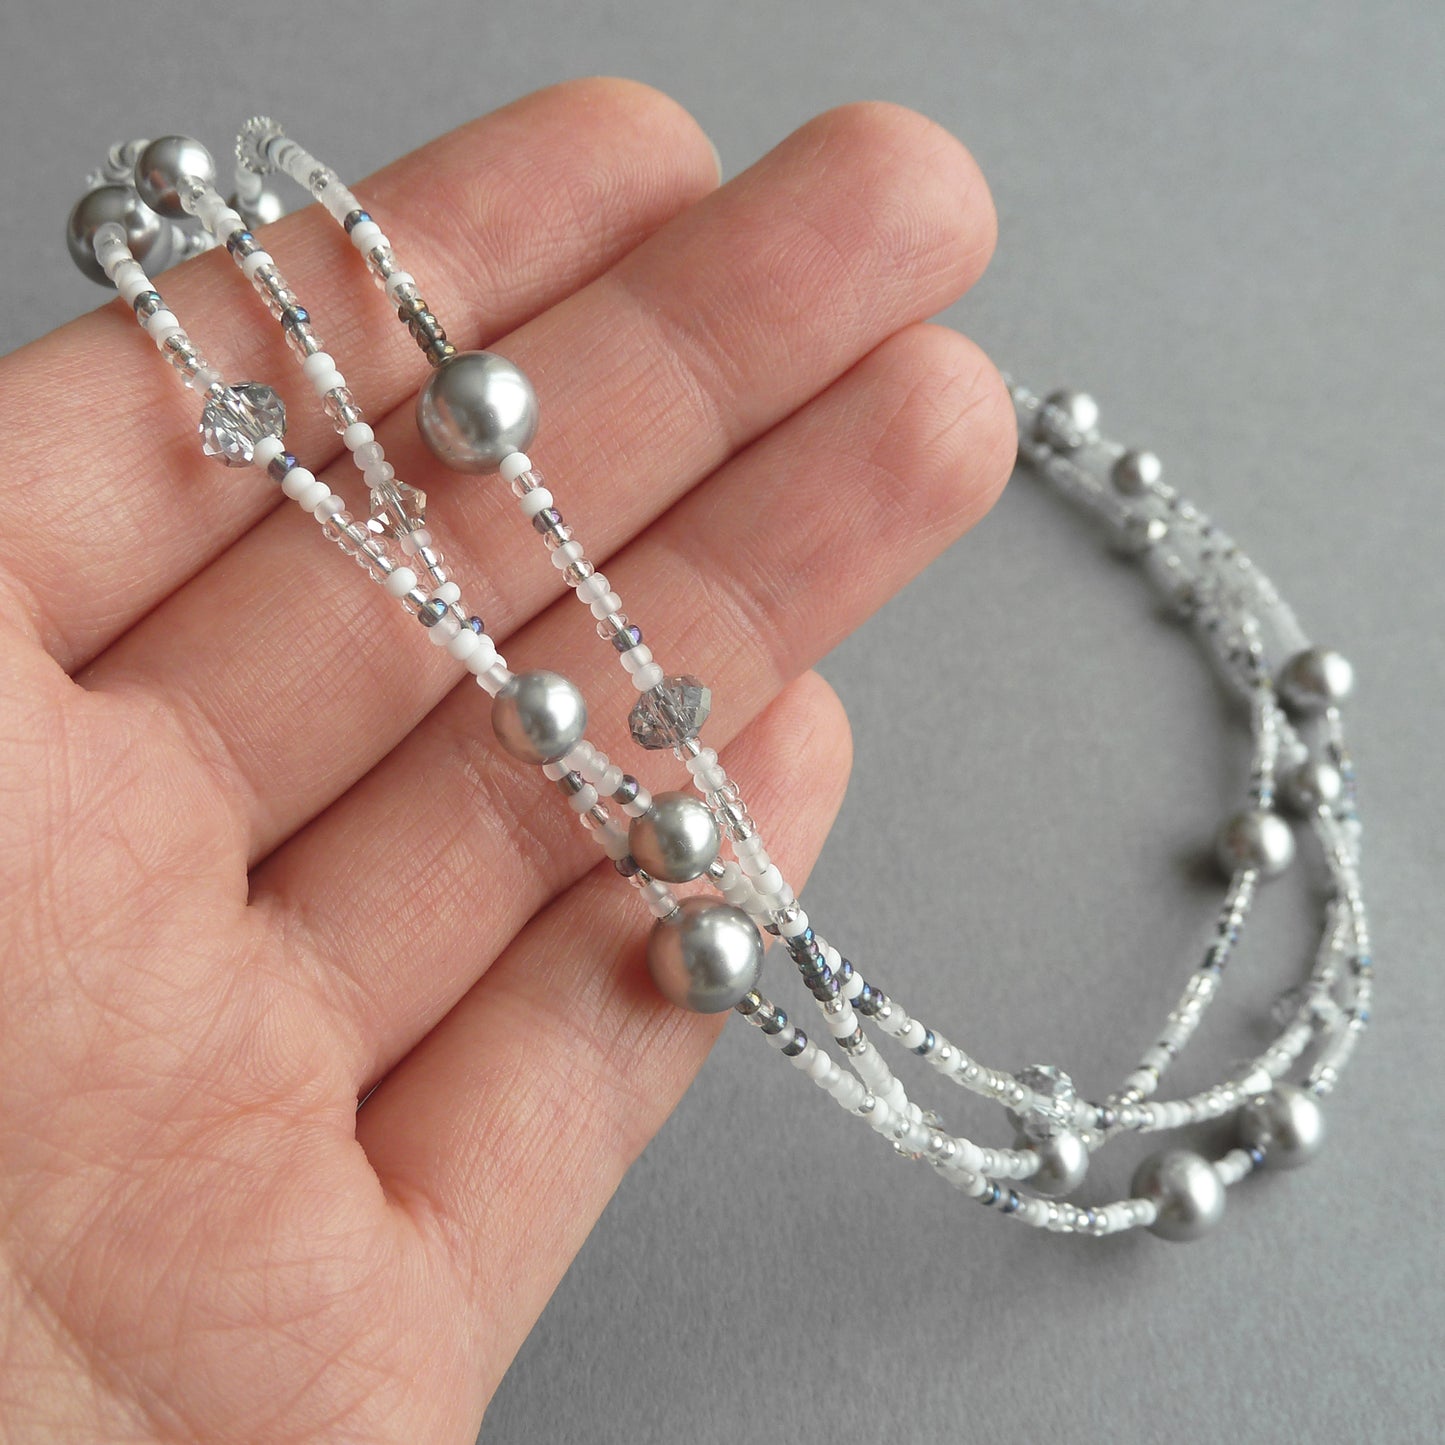 Silver grey pearl necklace